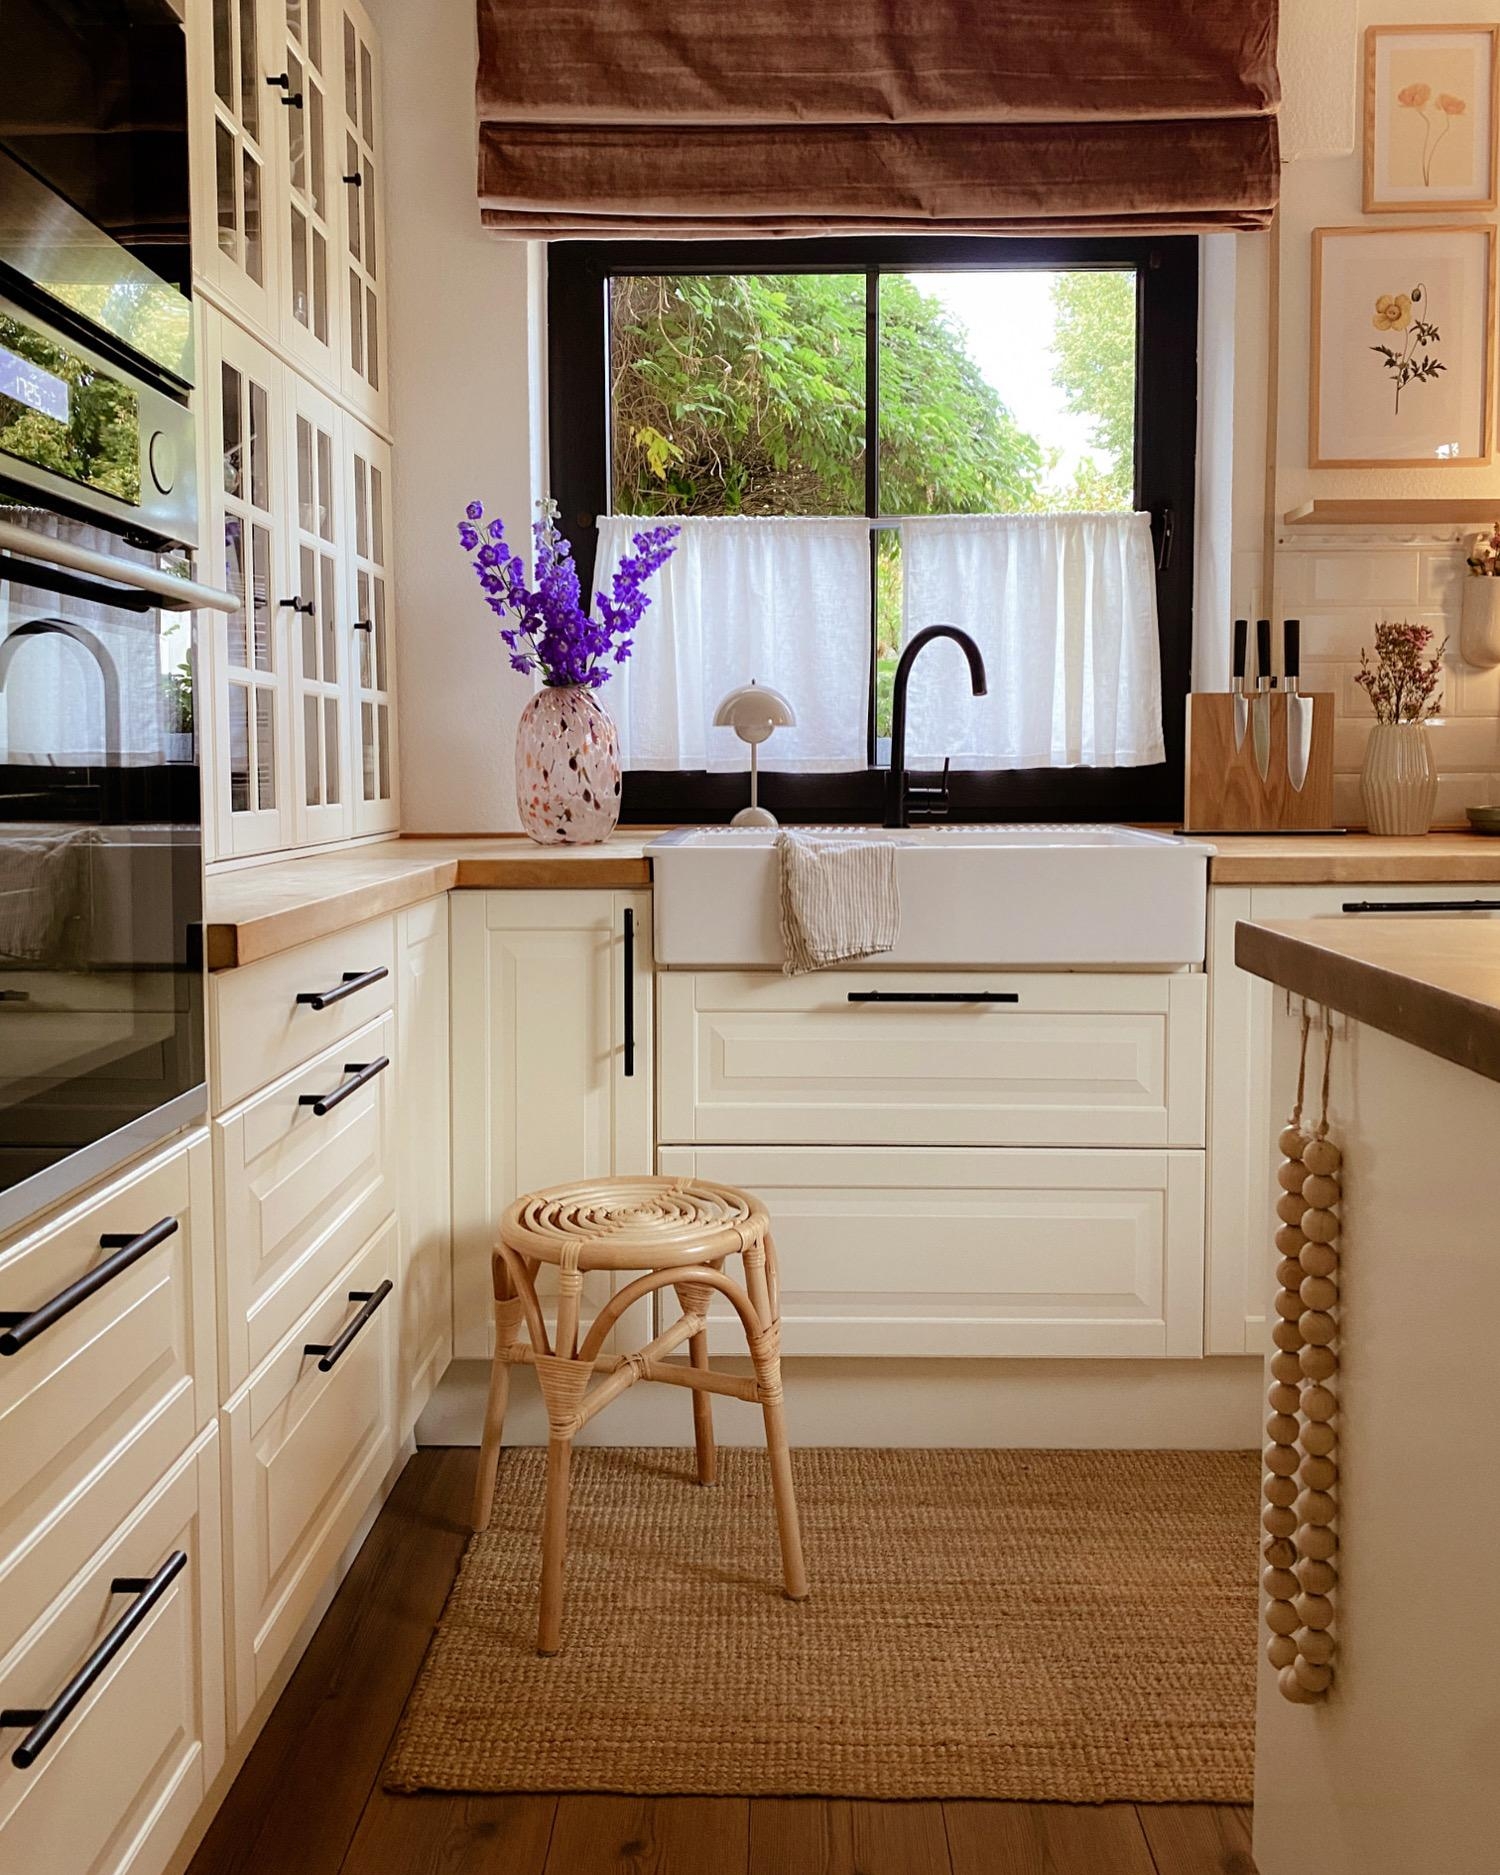 Kitchenstories 
#kitchen#freshflowers#whitekitchen#homestyle#landhaus#window#myhome